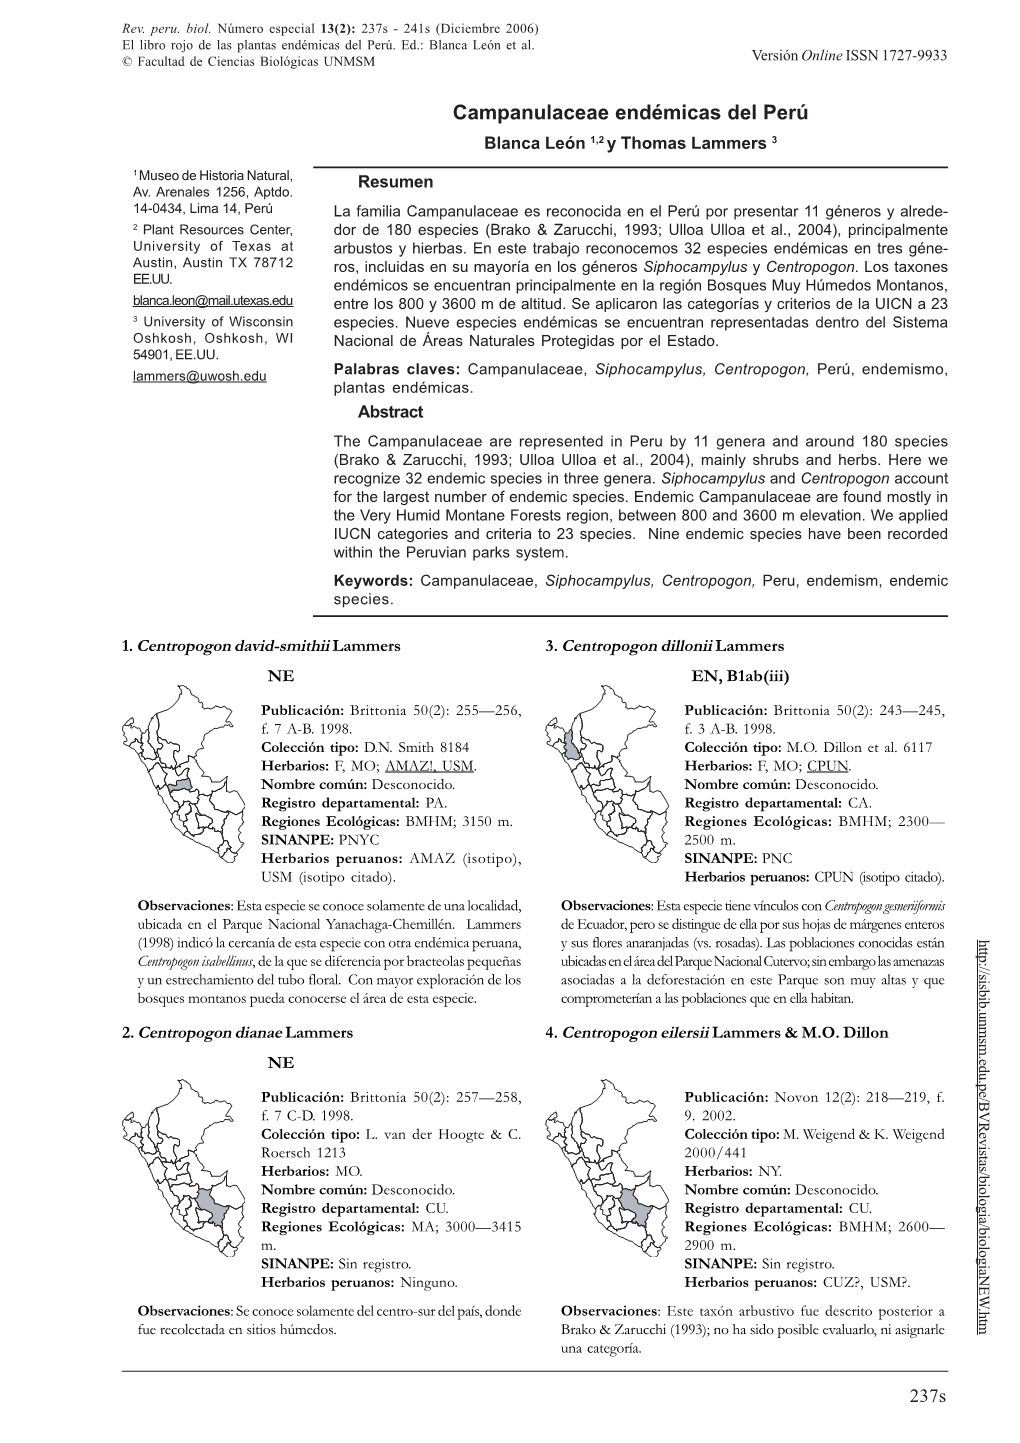 CAMPANULACEAE ENDÉMICAS DEL PERÚ © Facultad De Ciencias Biológicas UNMSM Versión Online ISSN 1727-9933